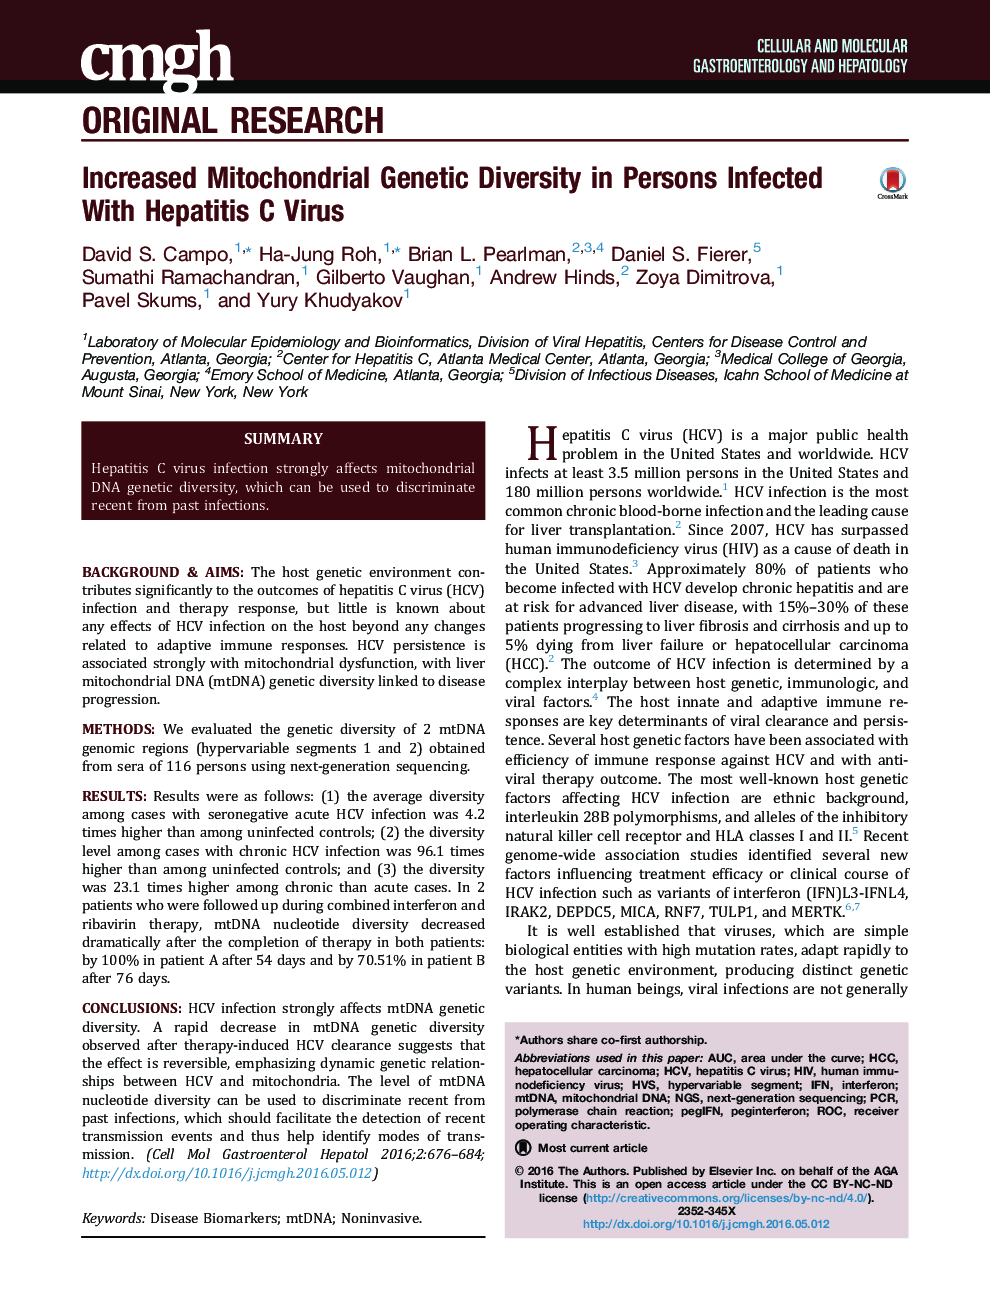 افزایش تنوع ژنتیکی میتوکندری در افراد مبتلا به ویروس هپاتیت سی 